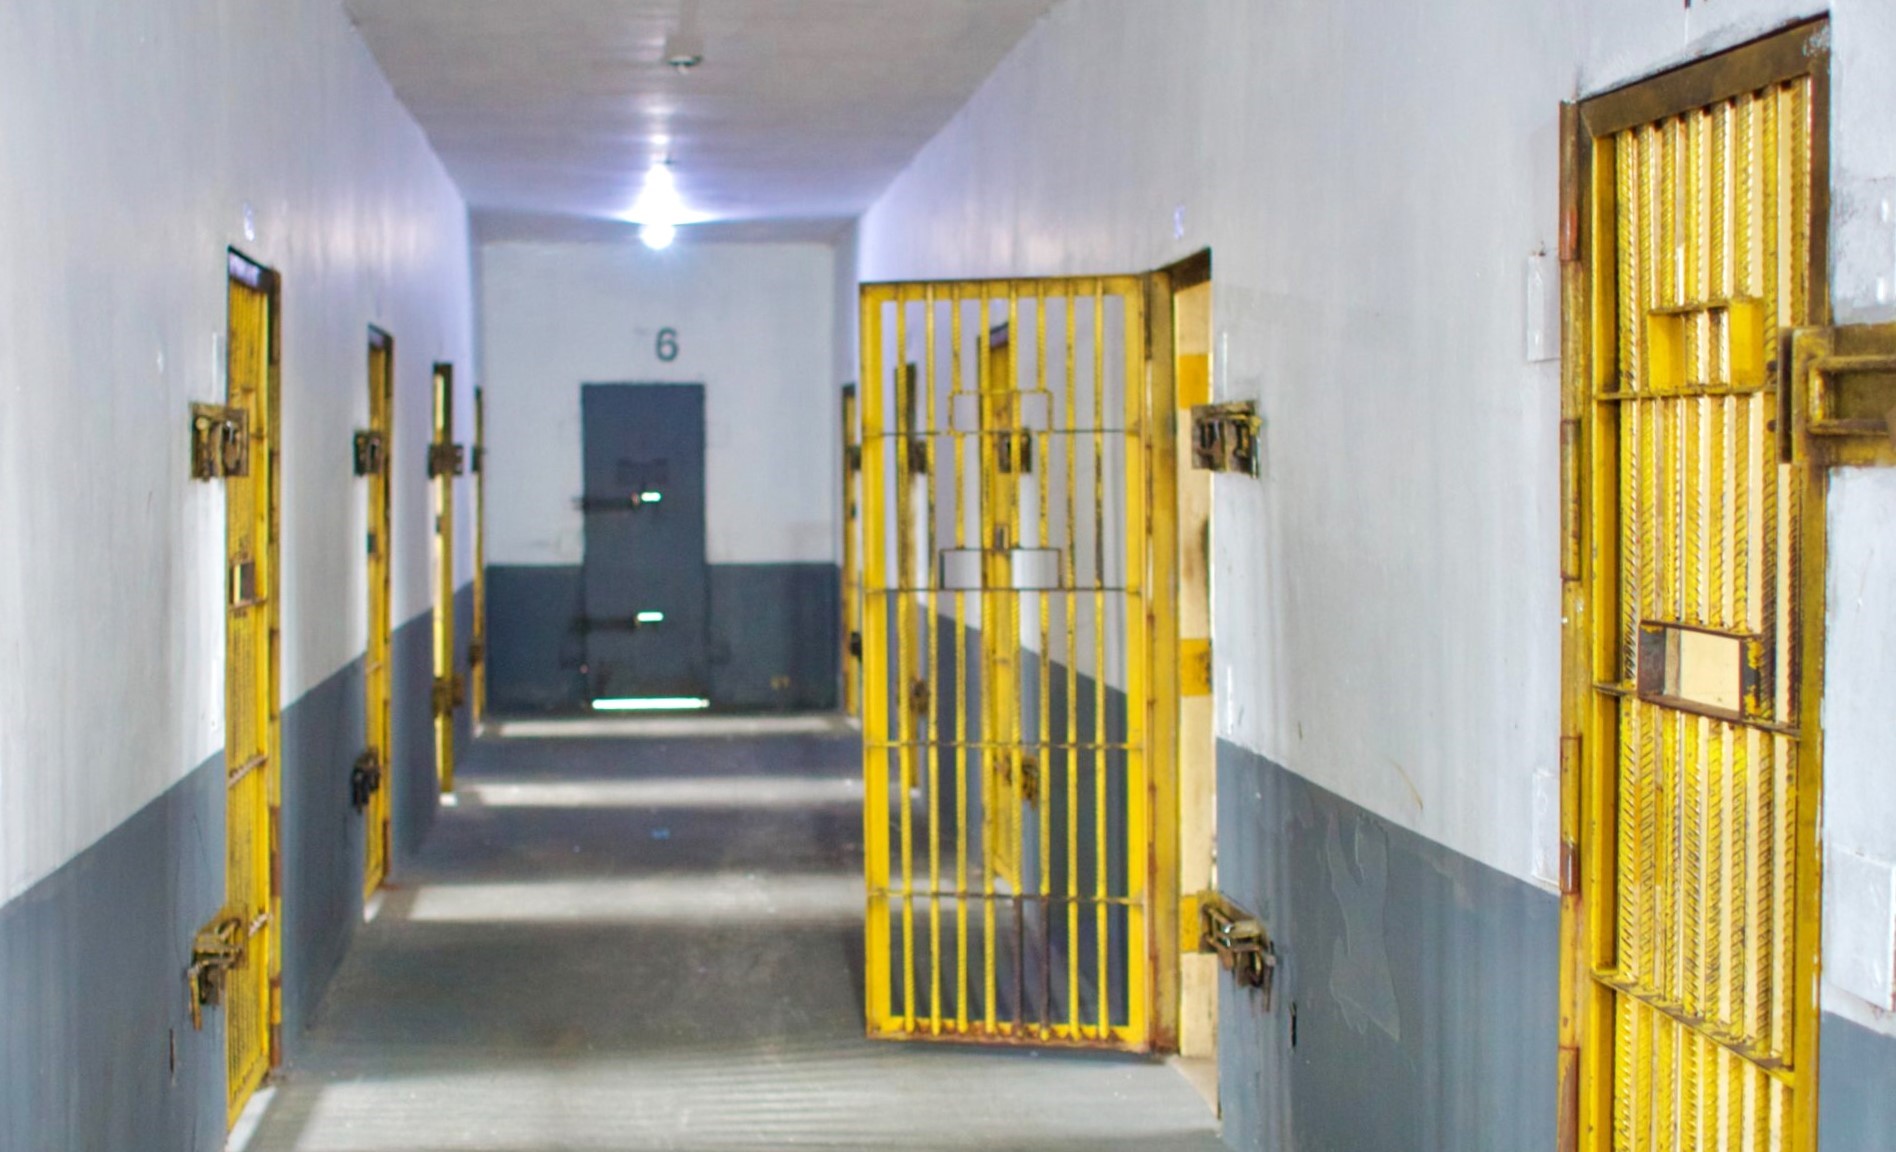 Presos fazem greve de fome por melhorias em complexo penitenciário